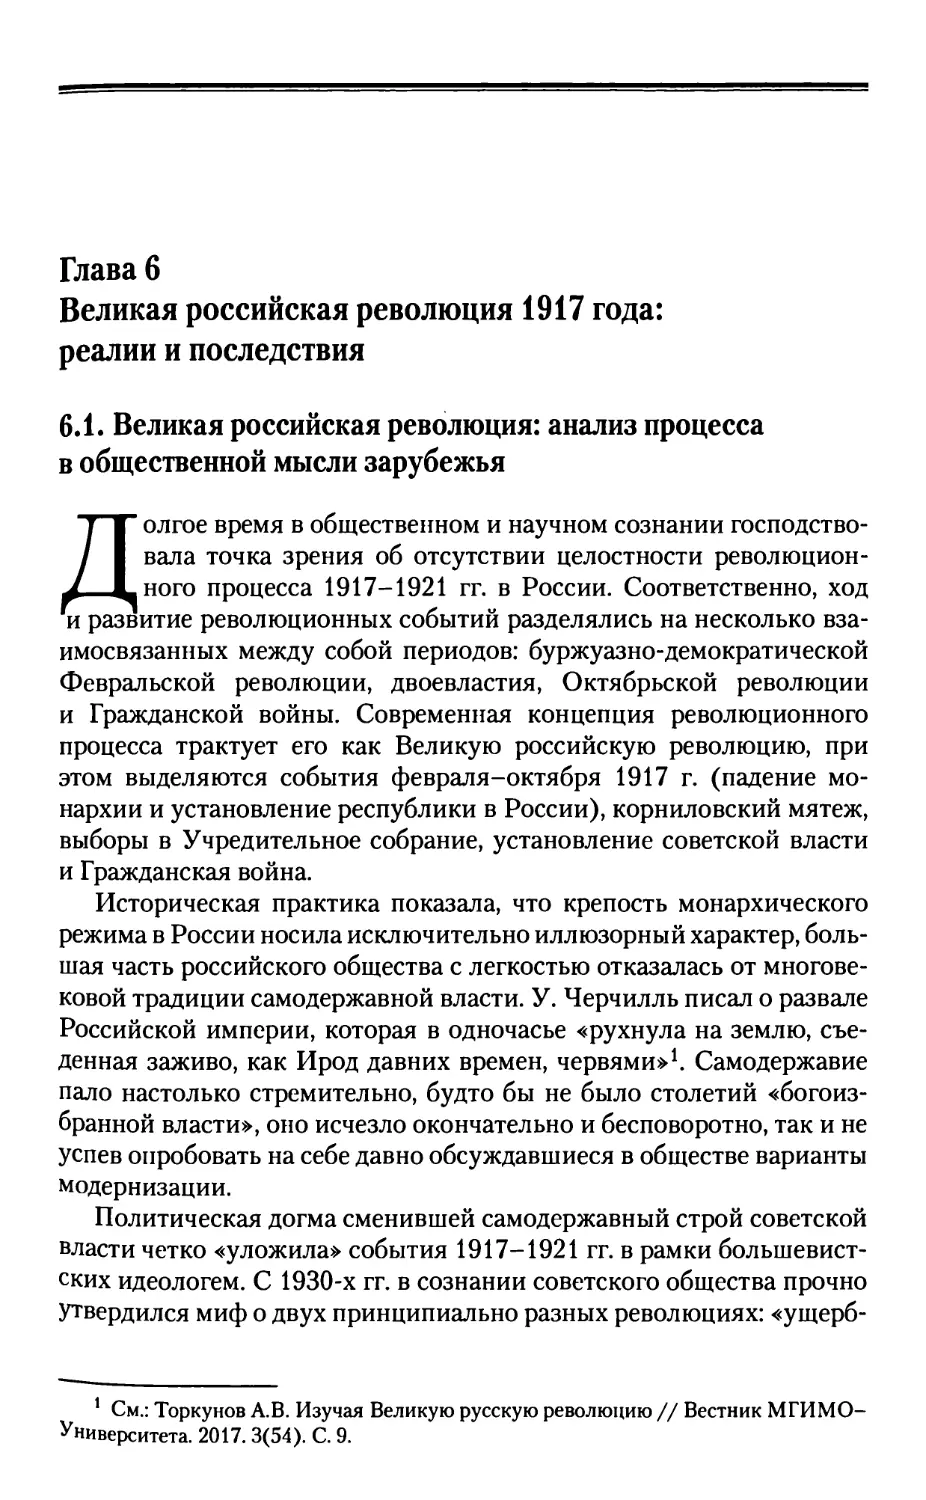 Глава 6. Великая российская революция 1917 года: реалии и последствия